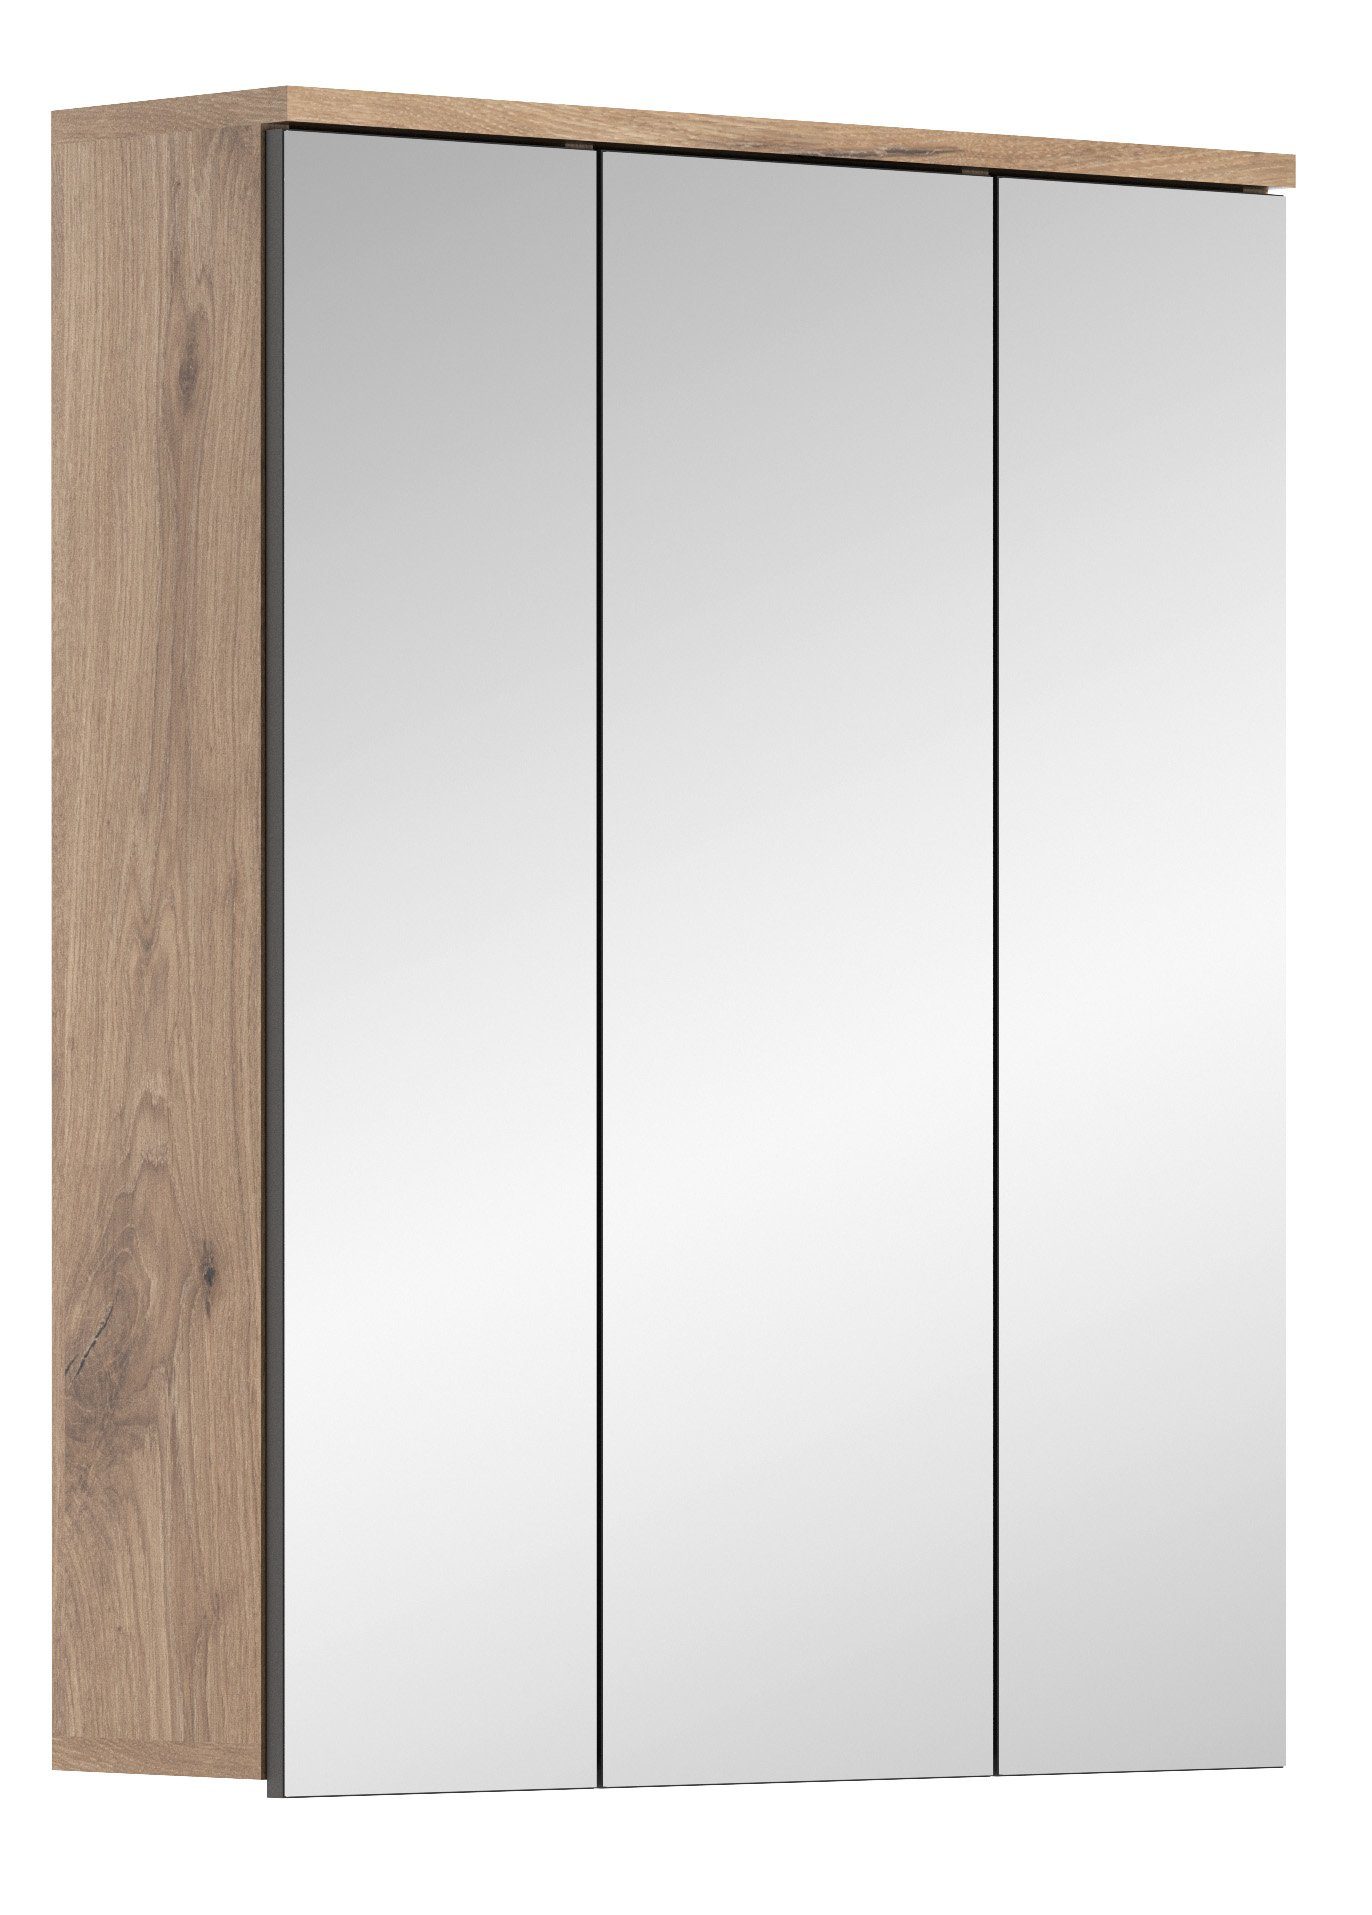 the kuup Badezimmerspiegelschrank Spiegelschrank I Modell TK8 I Hochwertige Spiegelfront I Korpus in Nox Oak Eiche Nachbildung | Spiegelschränke